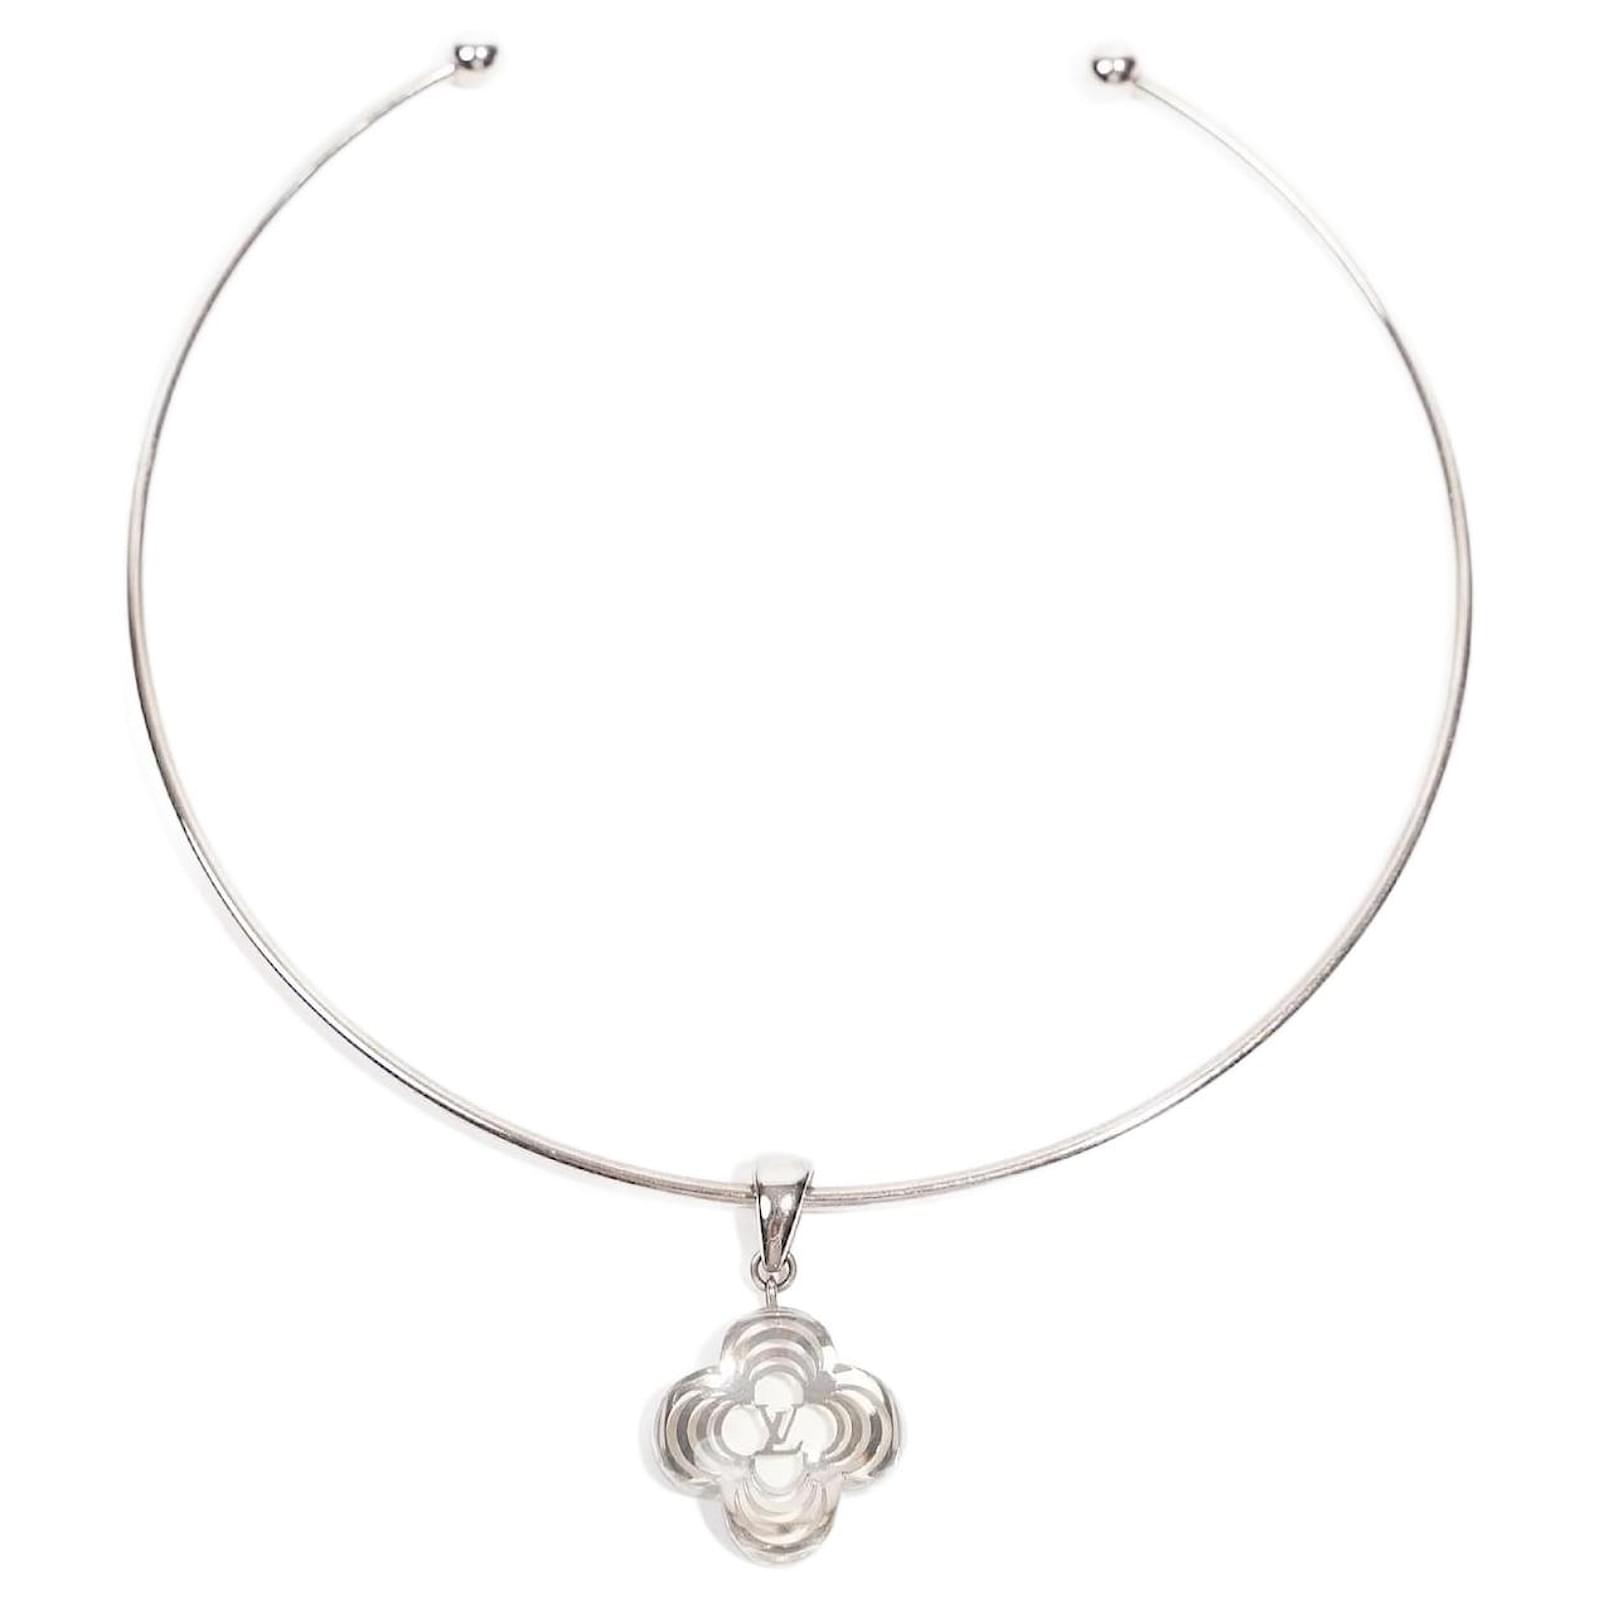 Louis Vuitton Large Heart Necklace – GLASS